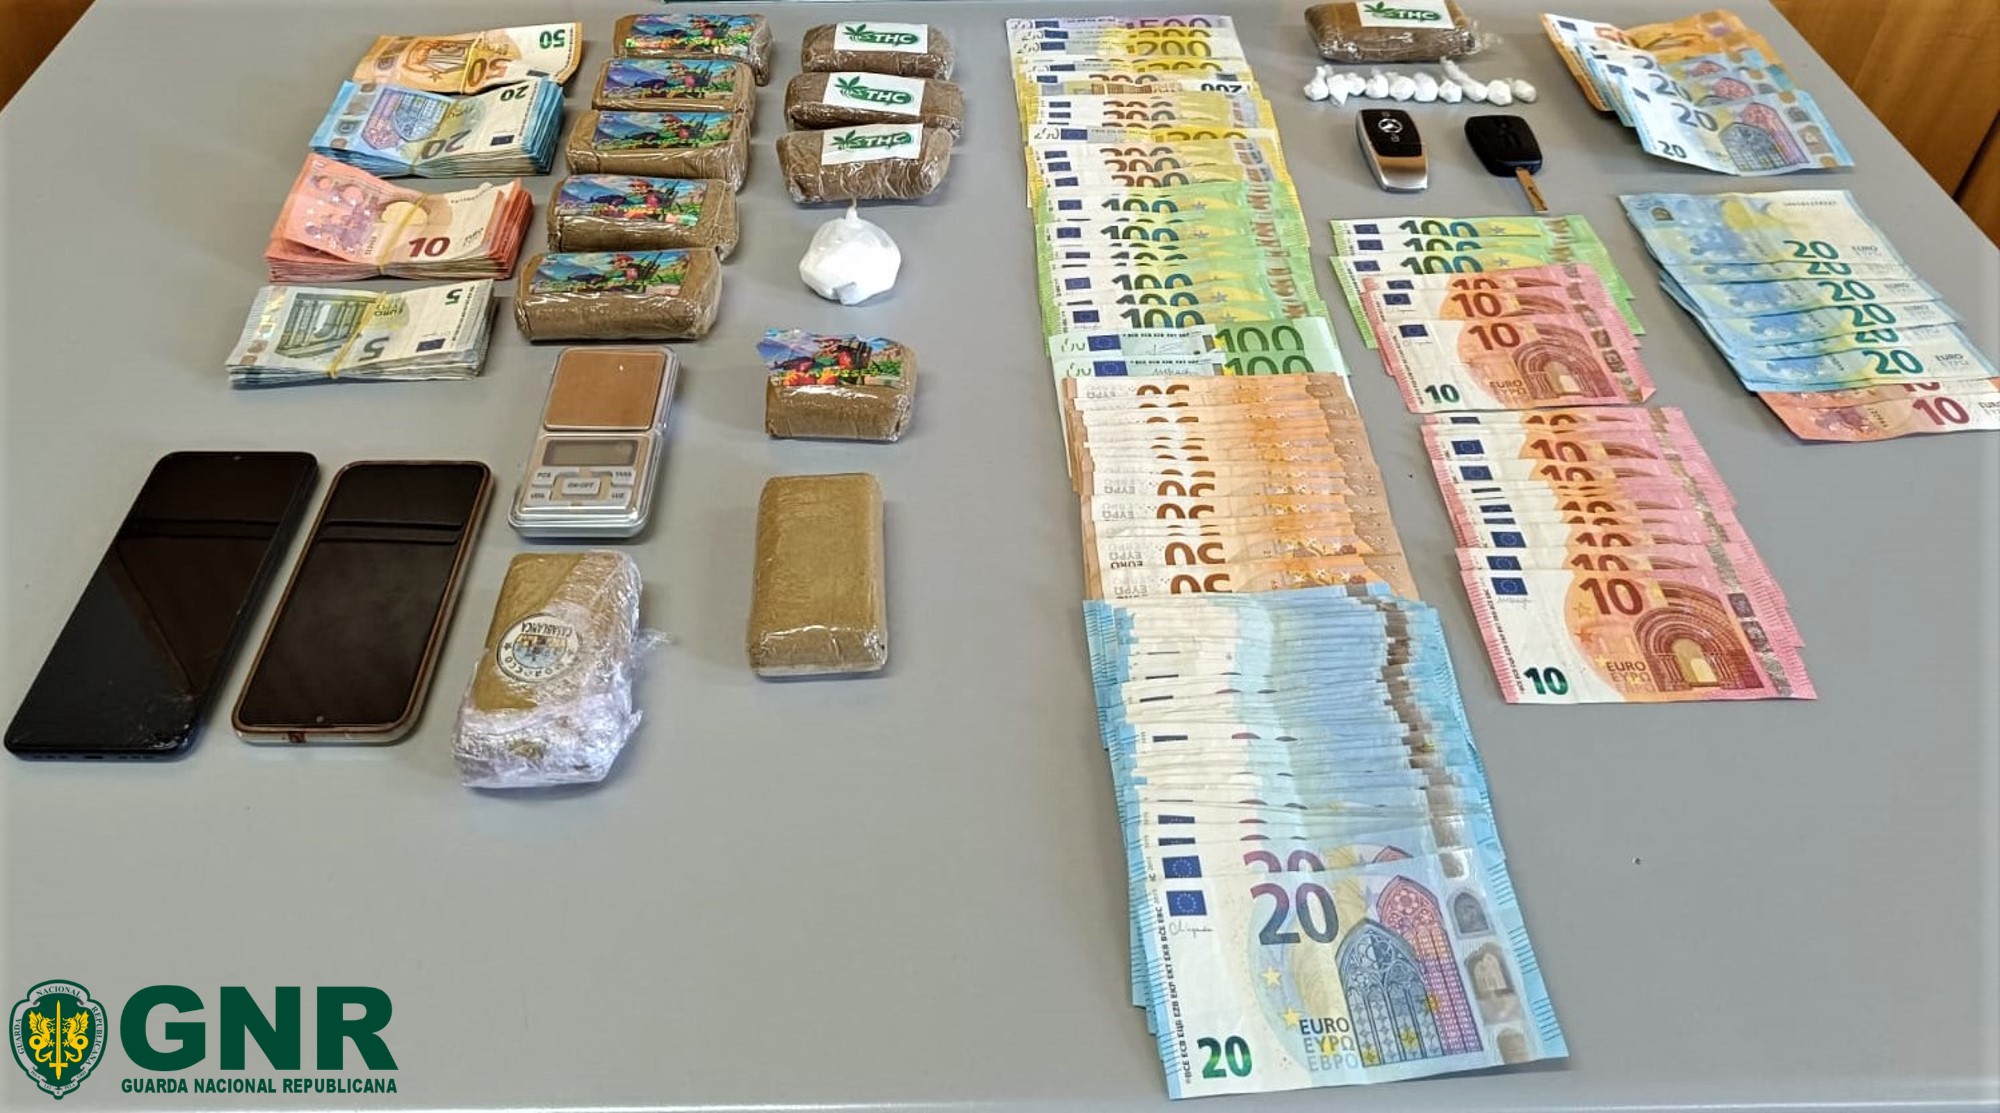 Porto – Dois detidos por tráfico com mais 2 700 doses de estupefacientes


